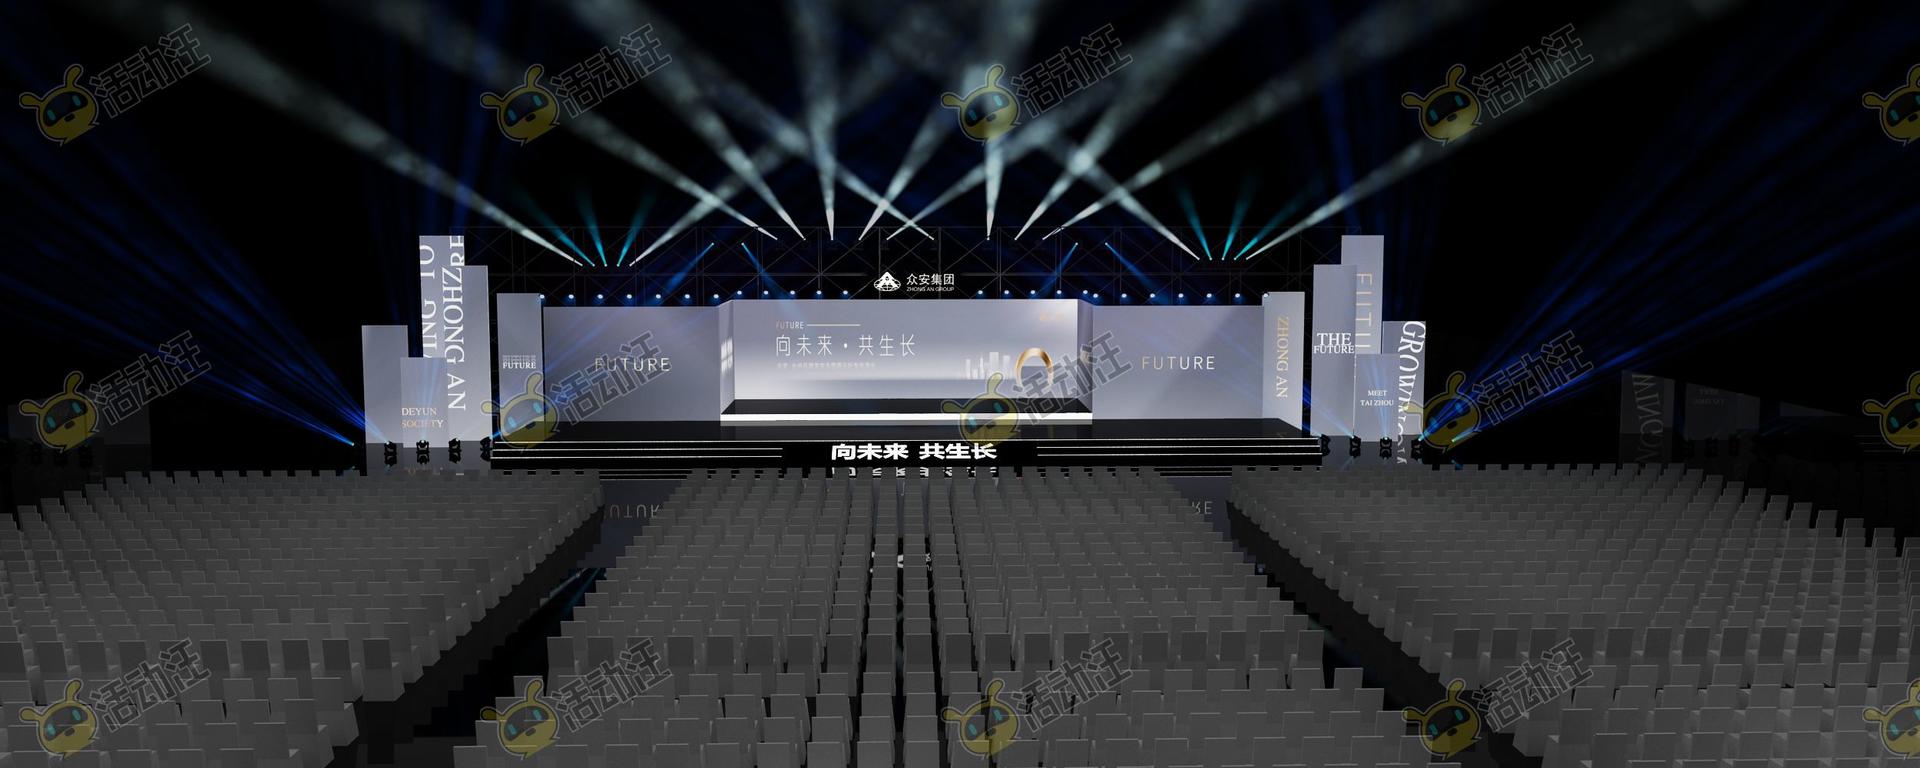 品牌发布会舞台区活动舞台舞美3d效果图